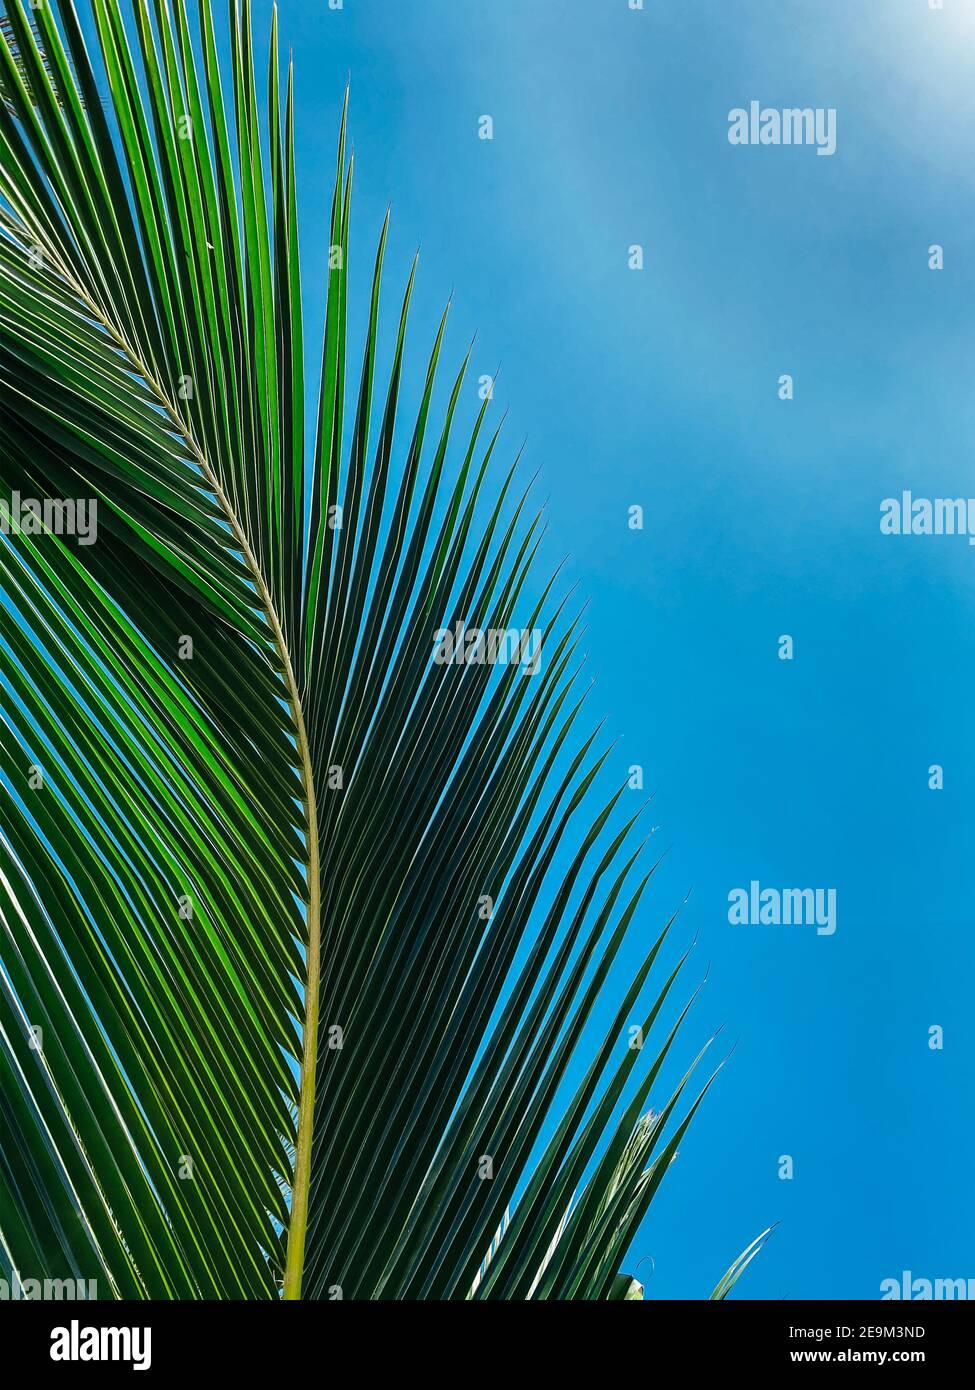 Concetto estivo. Primo piano della foglia di palma. Cielo blu chiaro sullo sfondo per l'inserimento di testo o logo Foto Stock